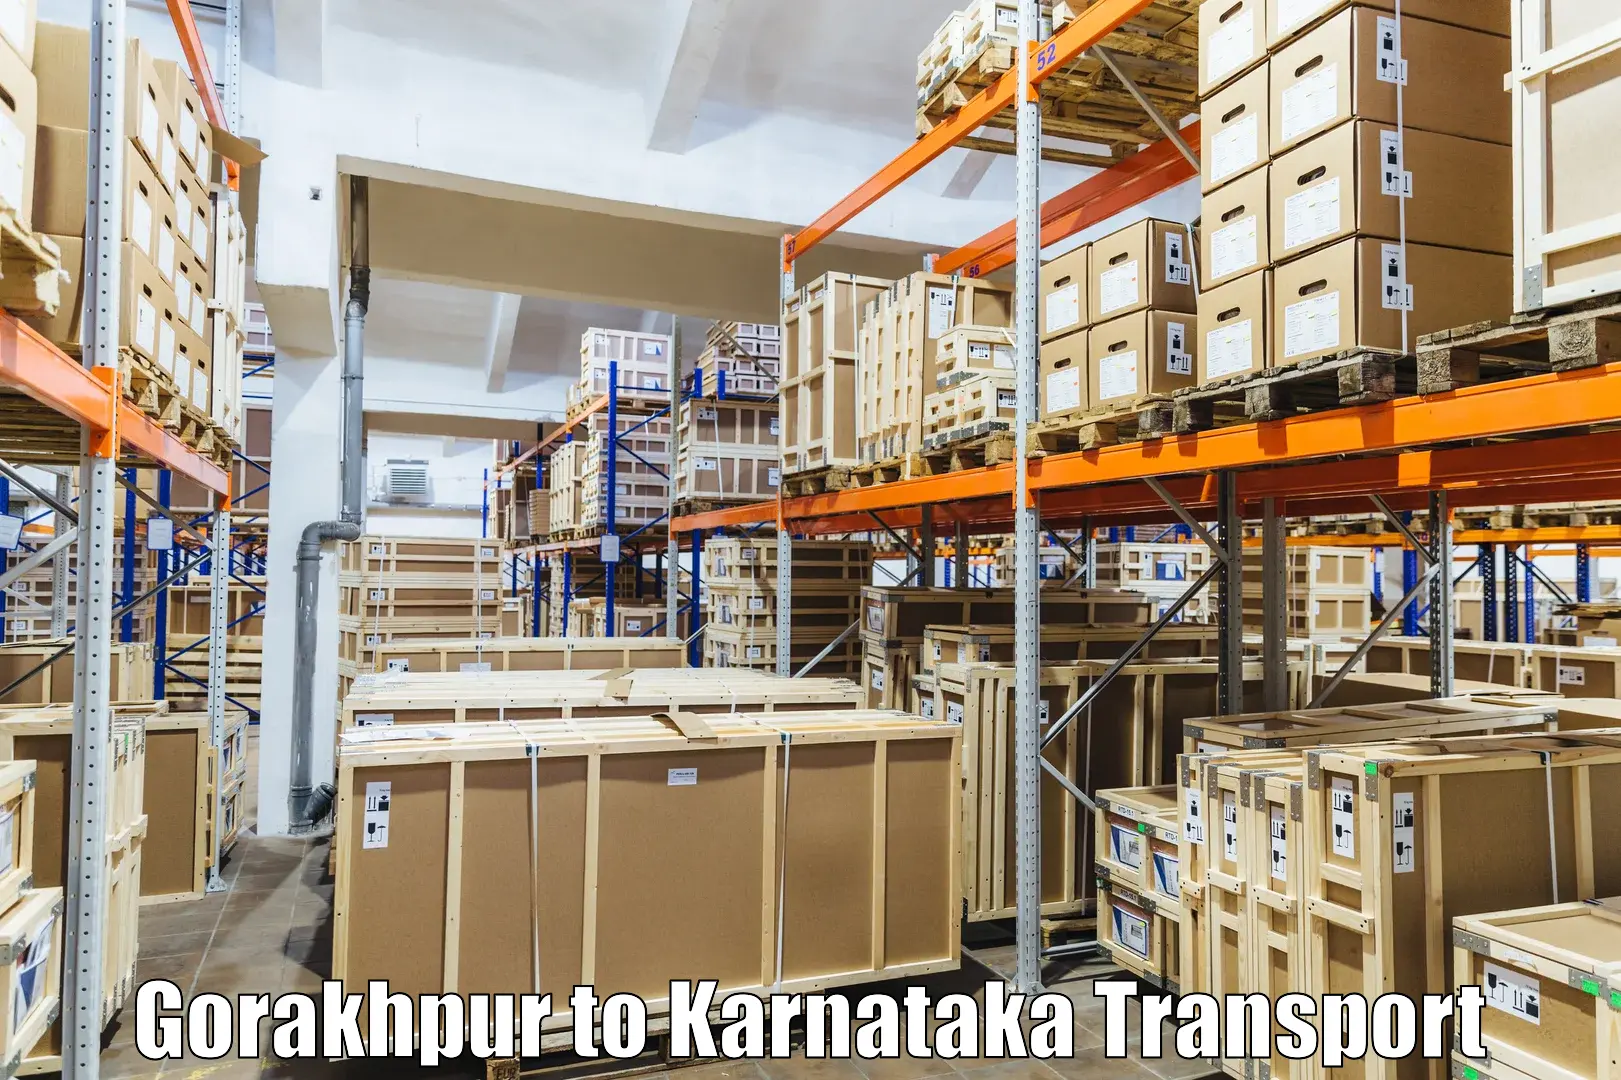 Daily parcel service transport Gorakhpur to Gauribidanur